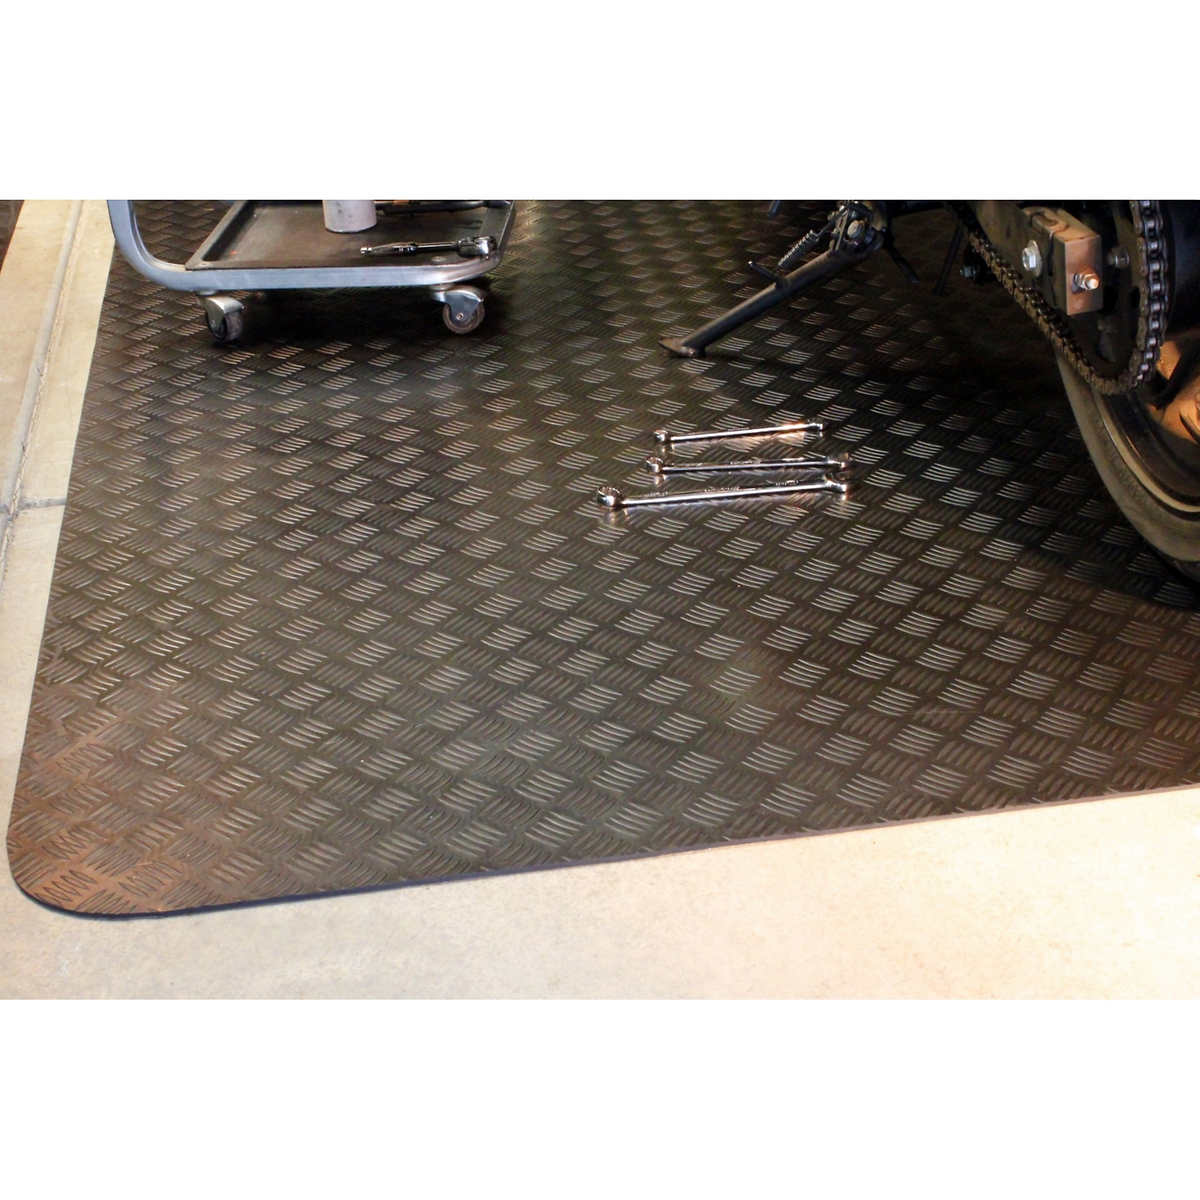 Coverguard 5 X 7 Garage Floor Rubber Mat Costco